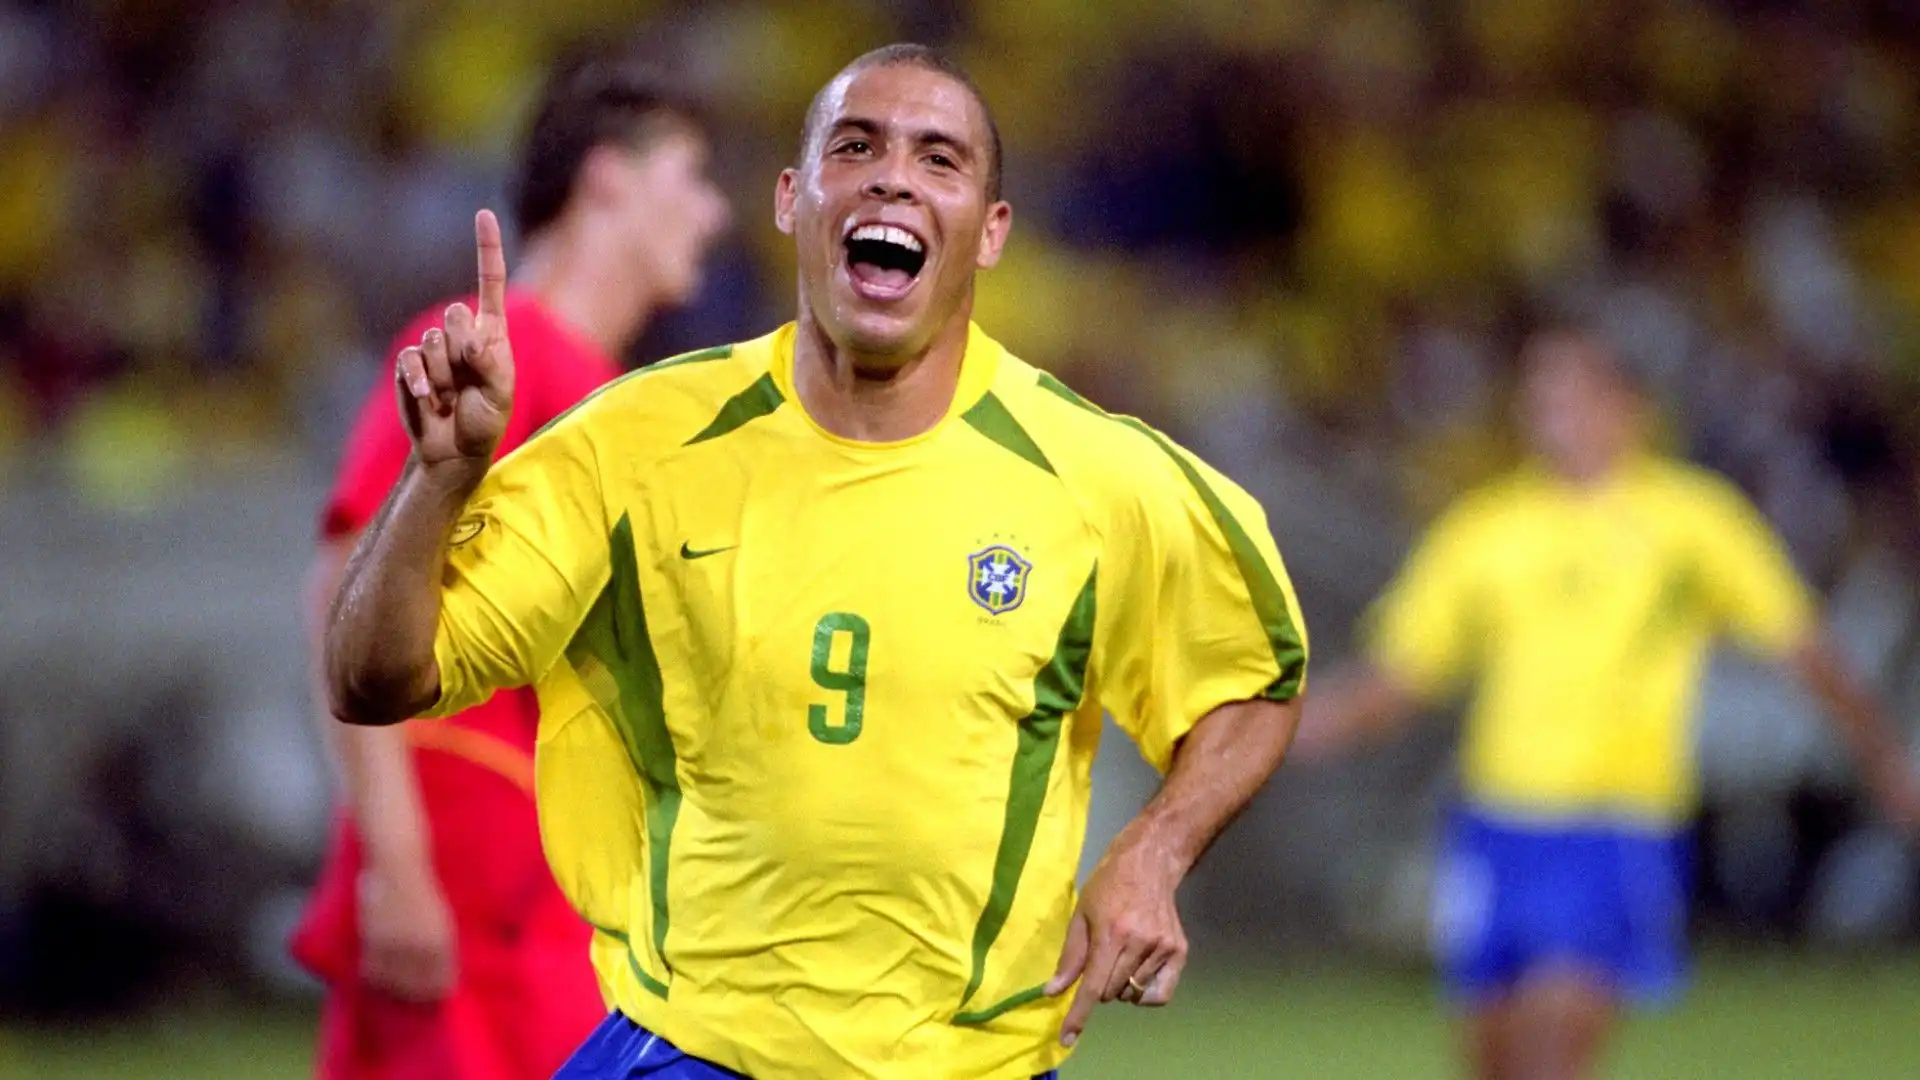 2- Nonostante i gravissimi infortuni è riuscito a giocare a livelli altissimi per anni: Ronaldo